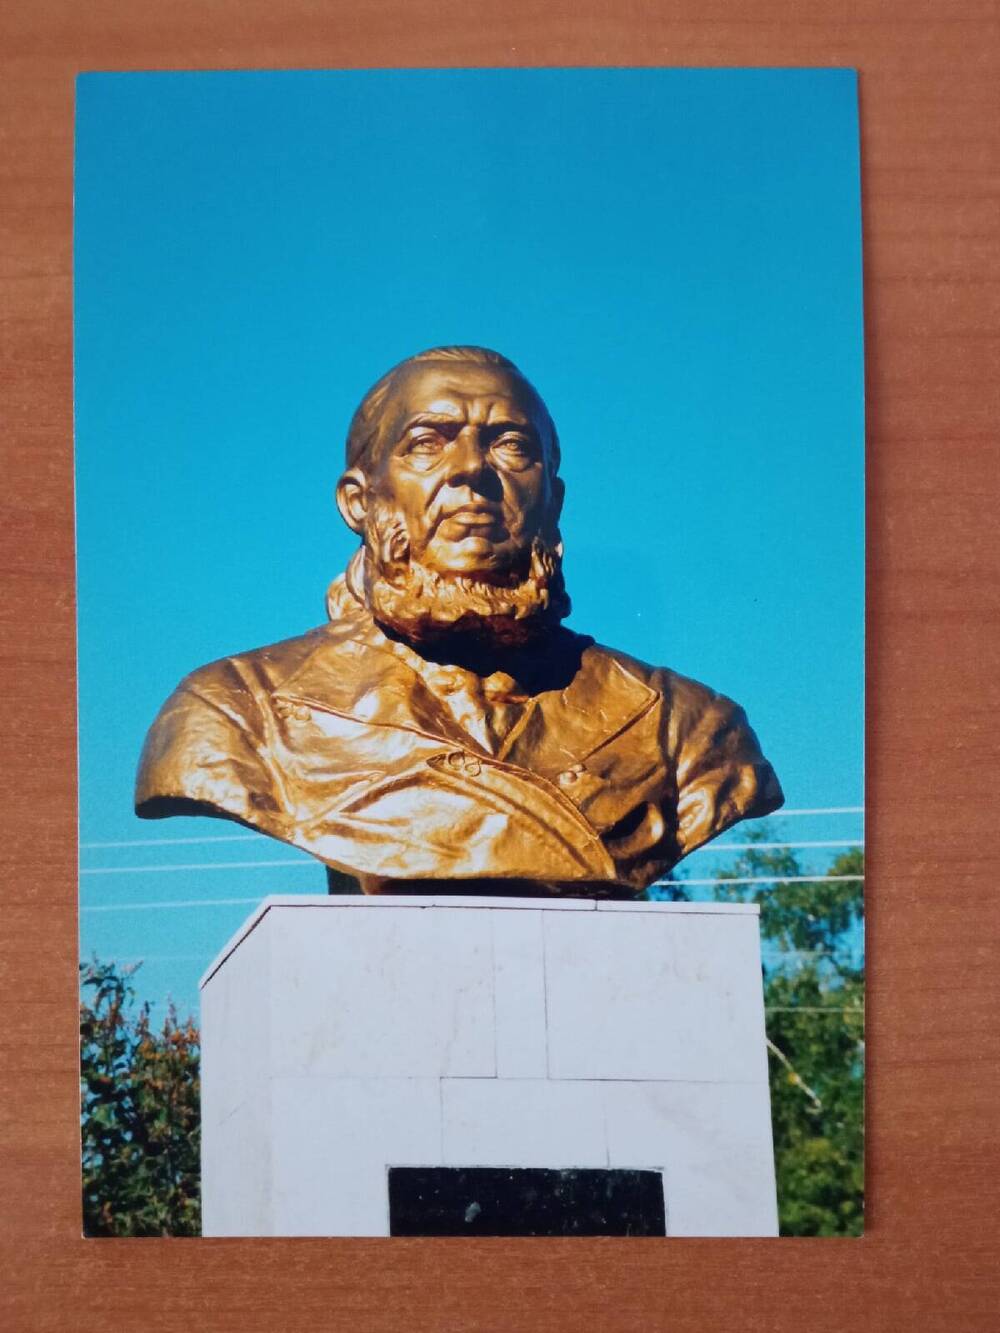 Фотография цветная. На фото изображён бронзовый памятник С.Т. Аксакову (бюст), выполненный уфимским скульптором Т.П. Нечаевой.